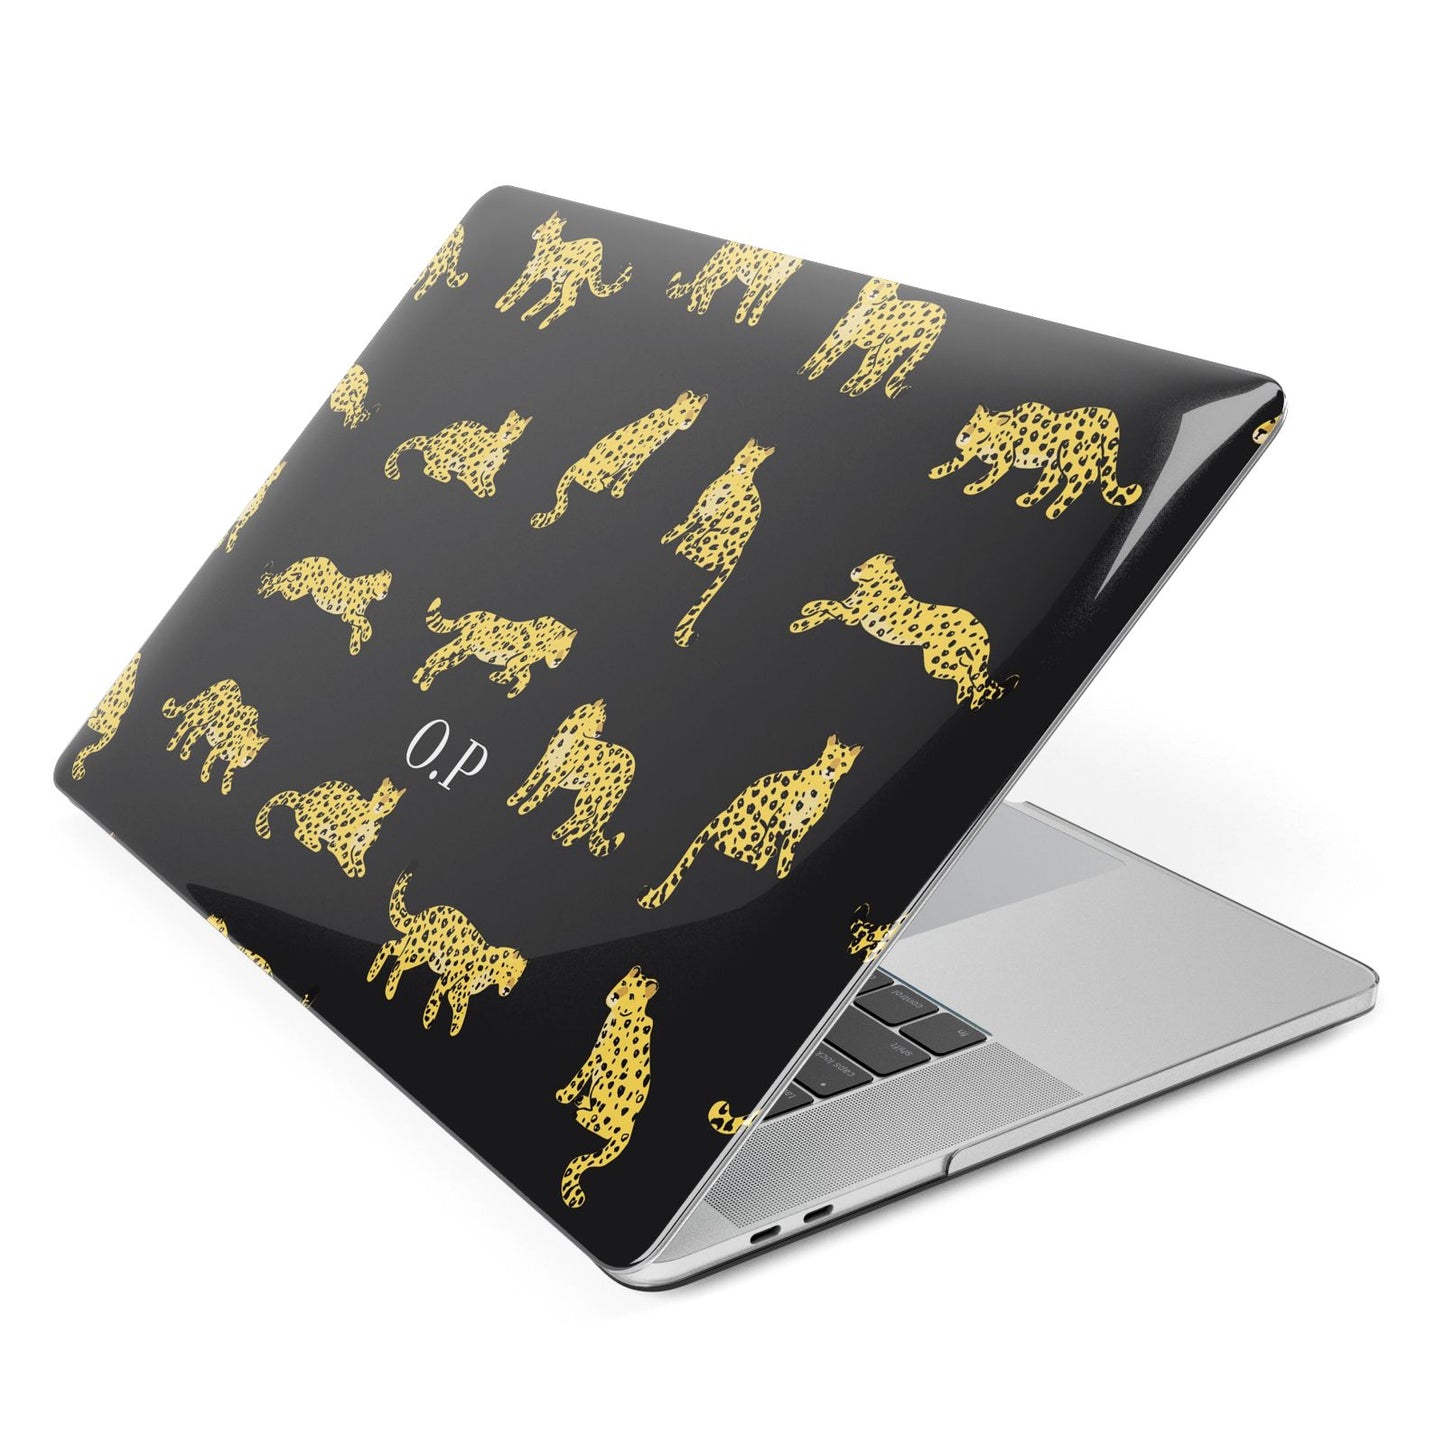 Prowling Leopard Apple MacBook Case Side View